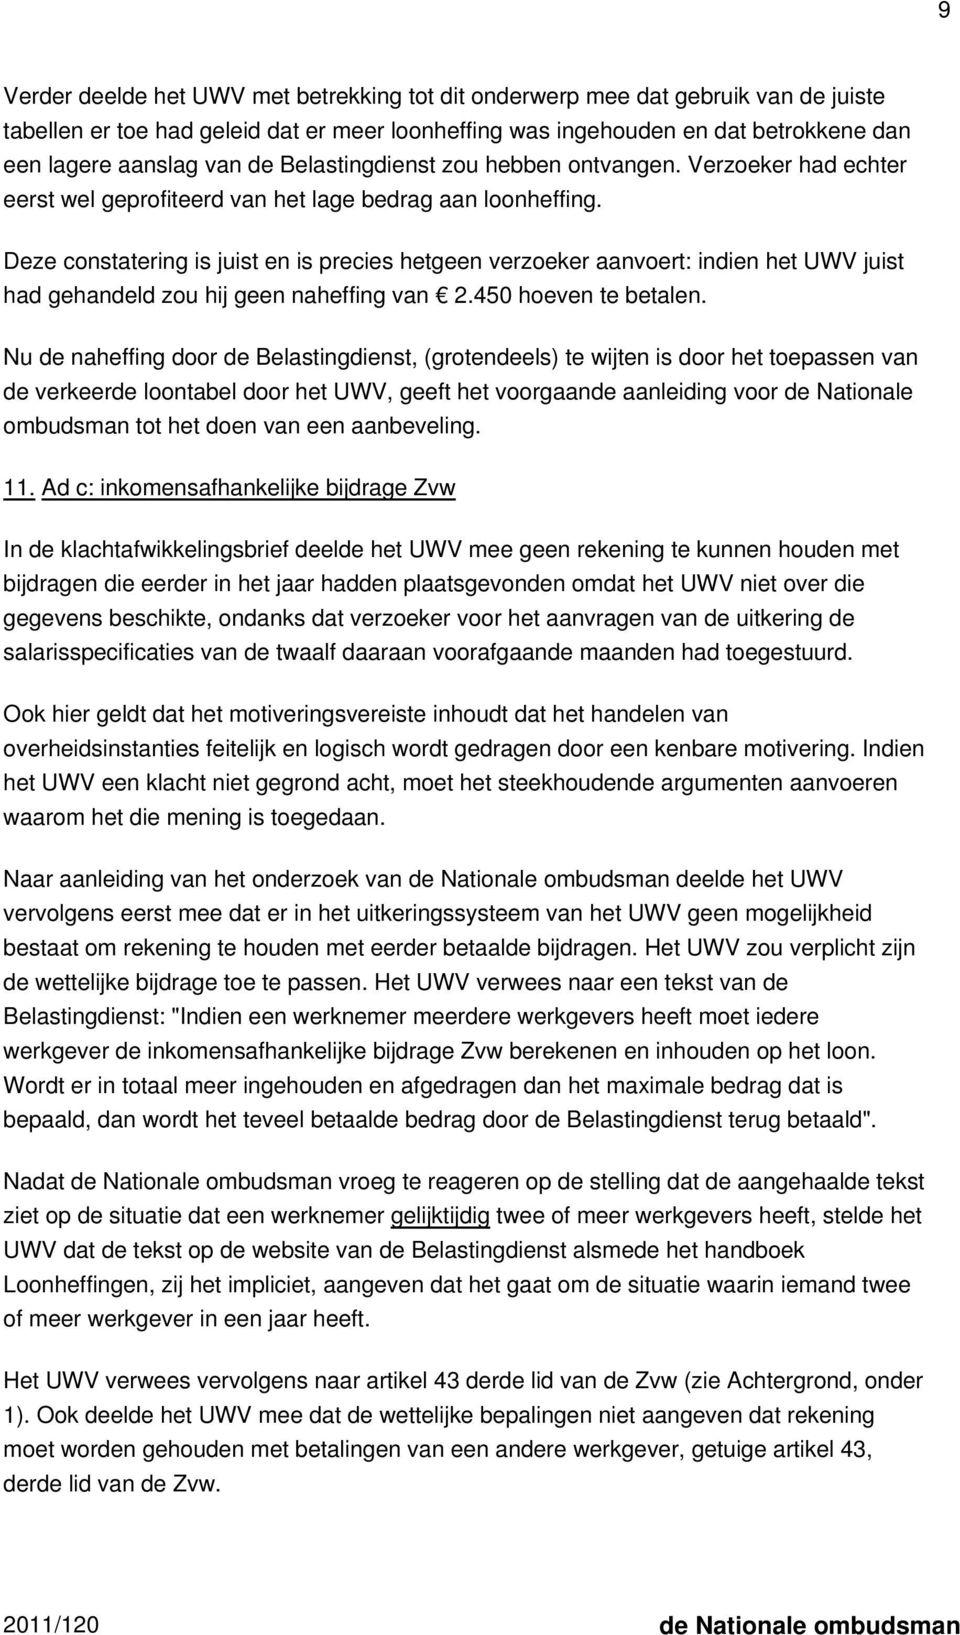 Deze constatering is juist en is precies hetgeen verzoeker aanvoert: indien het UWV juist had gehandeld zou hij geen naheffing van 2.450 hoeven te betalen.